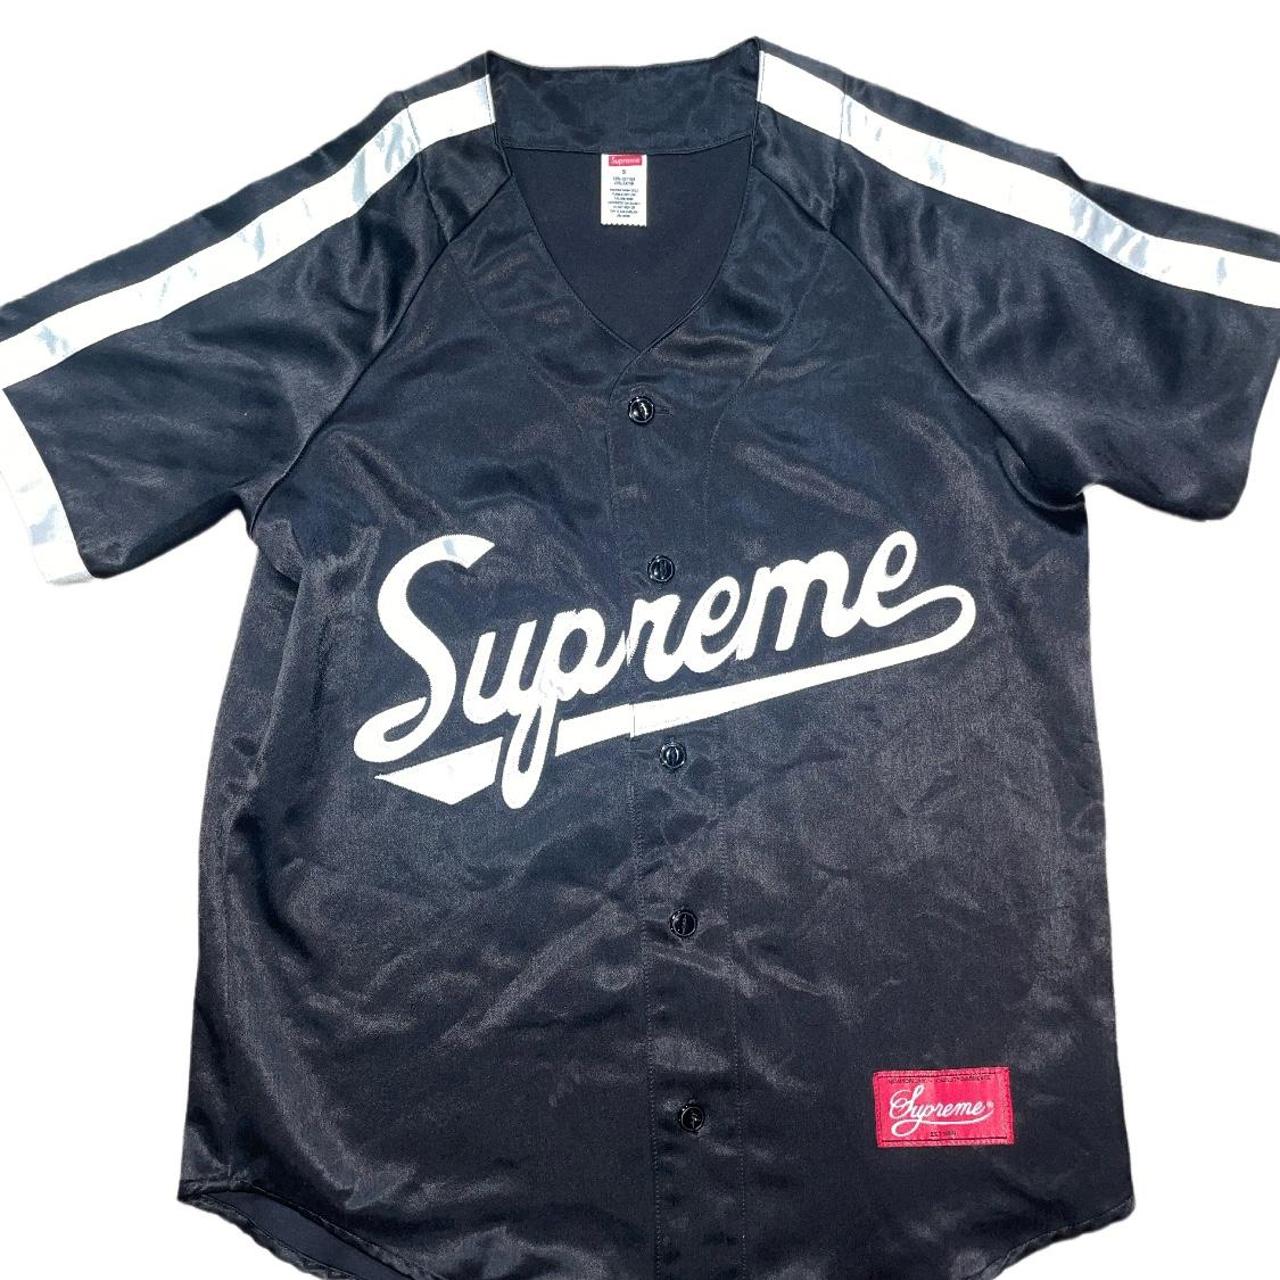 supreme baseball shirt